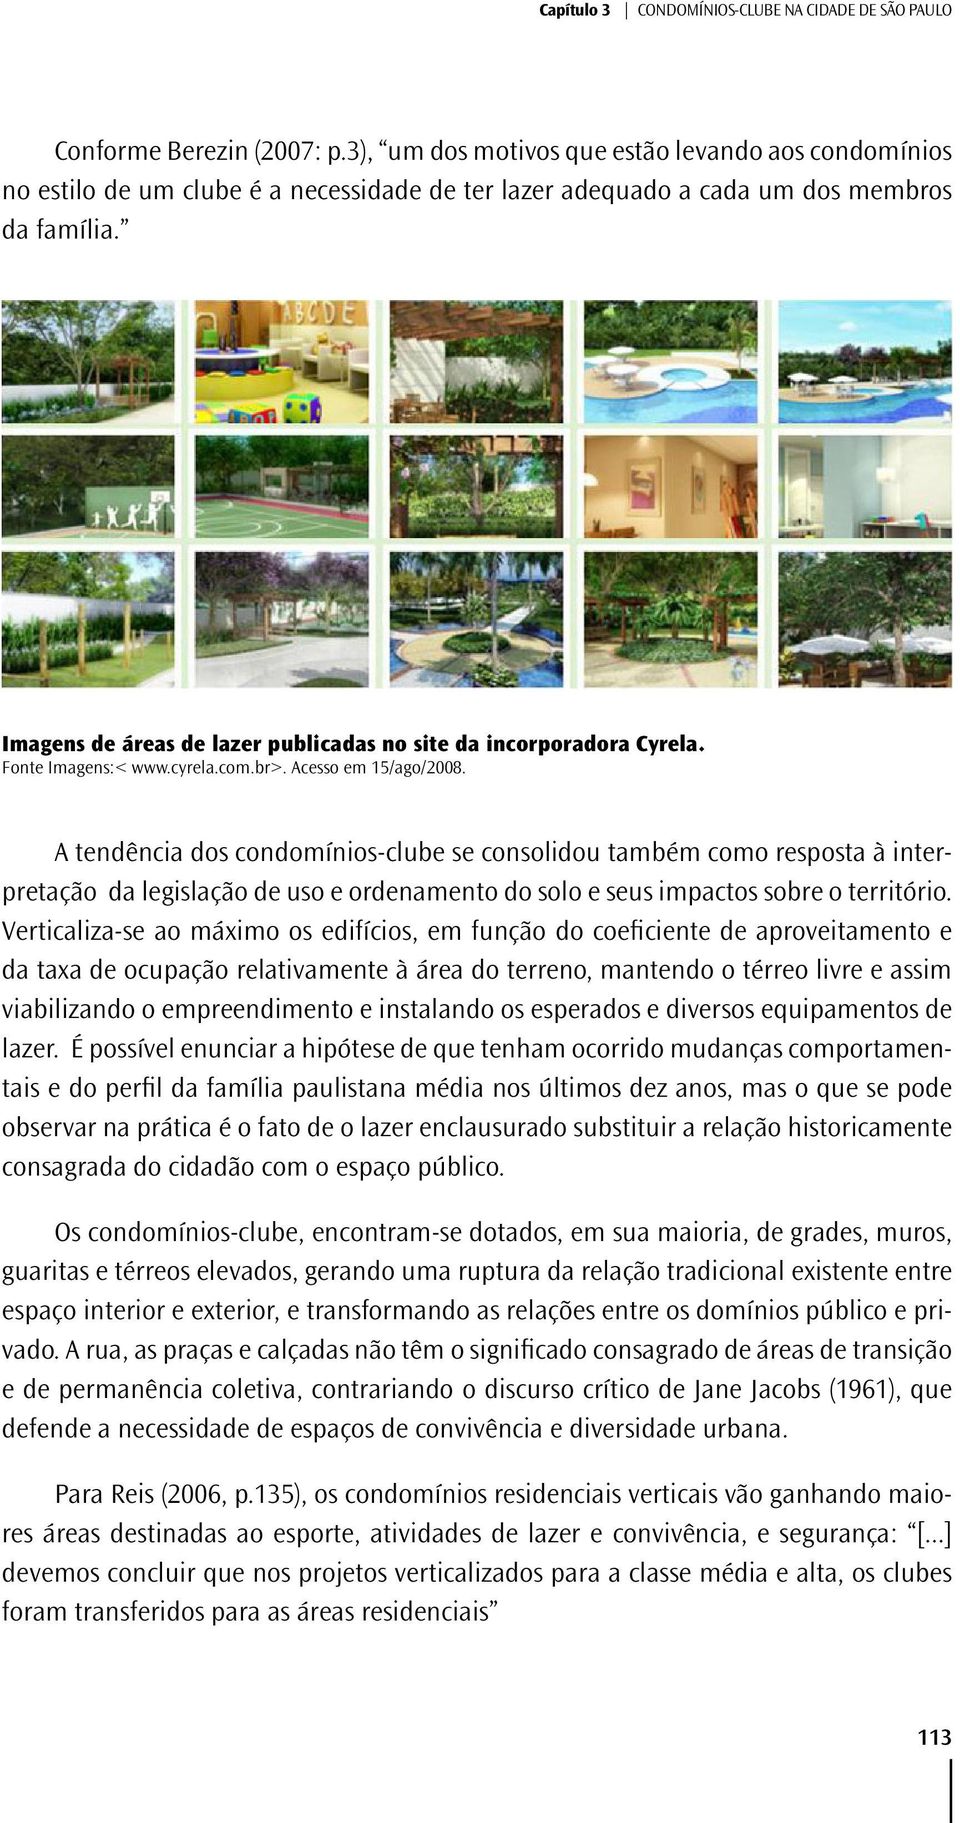 Imagens de áreas de lazer publicadas no site da incorporadora Cyrela. Fonte Imagens:< www.cyrela.com.br>. Acesso em 15/ago/2008.